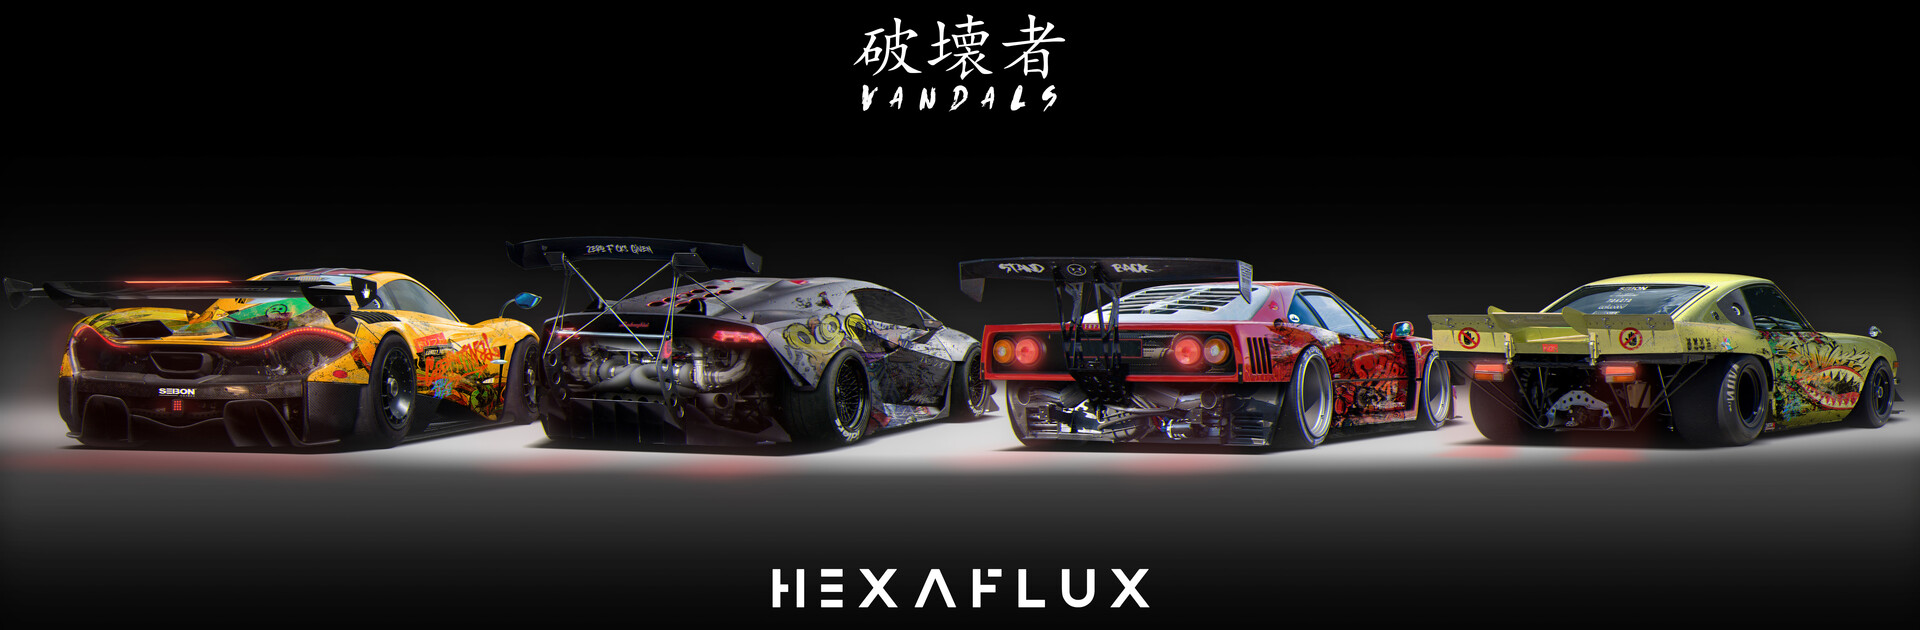 hexaflux-1.jpg